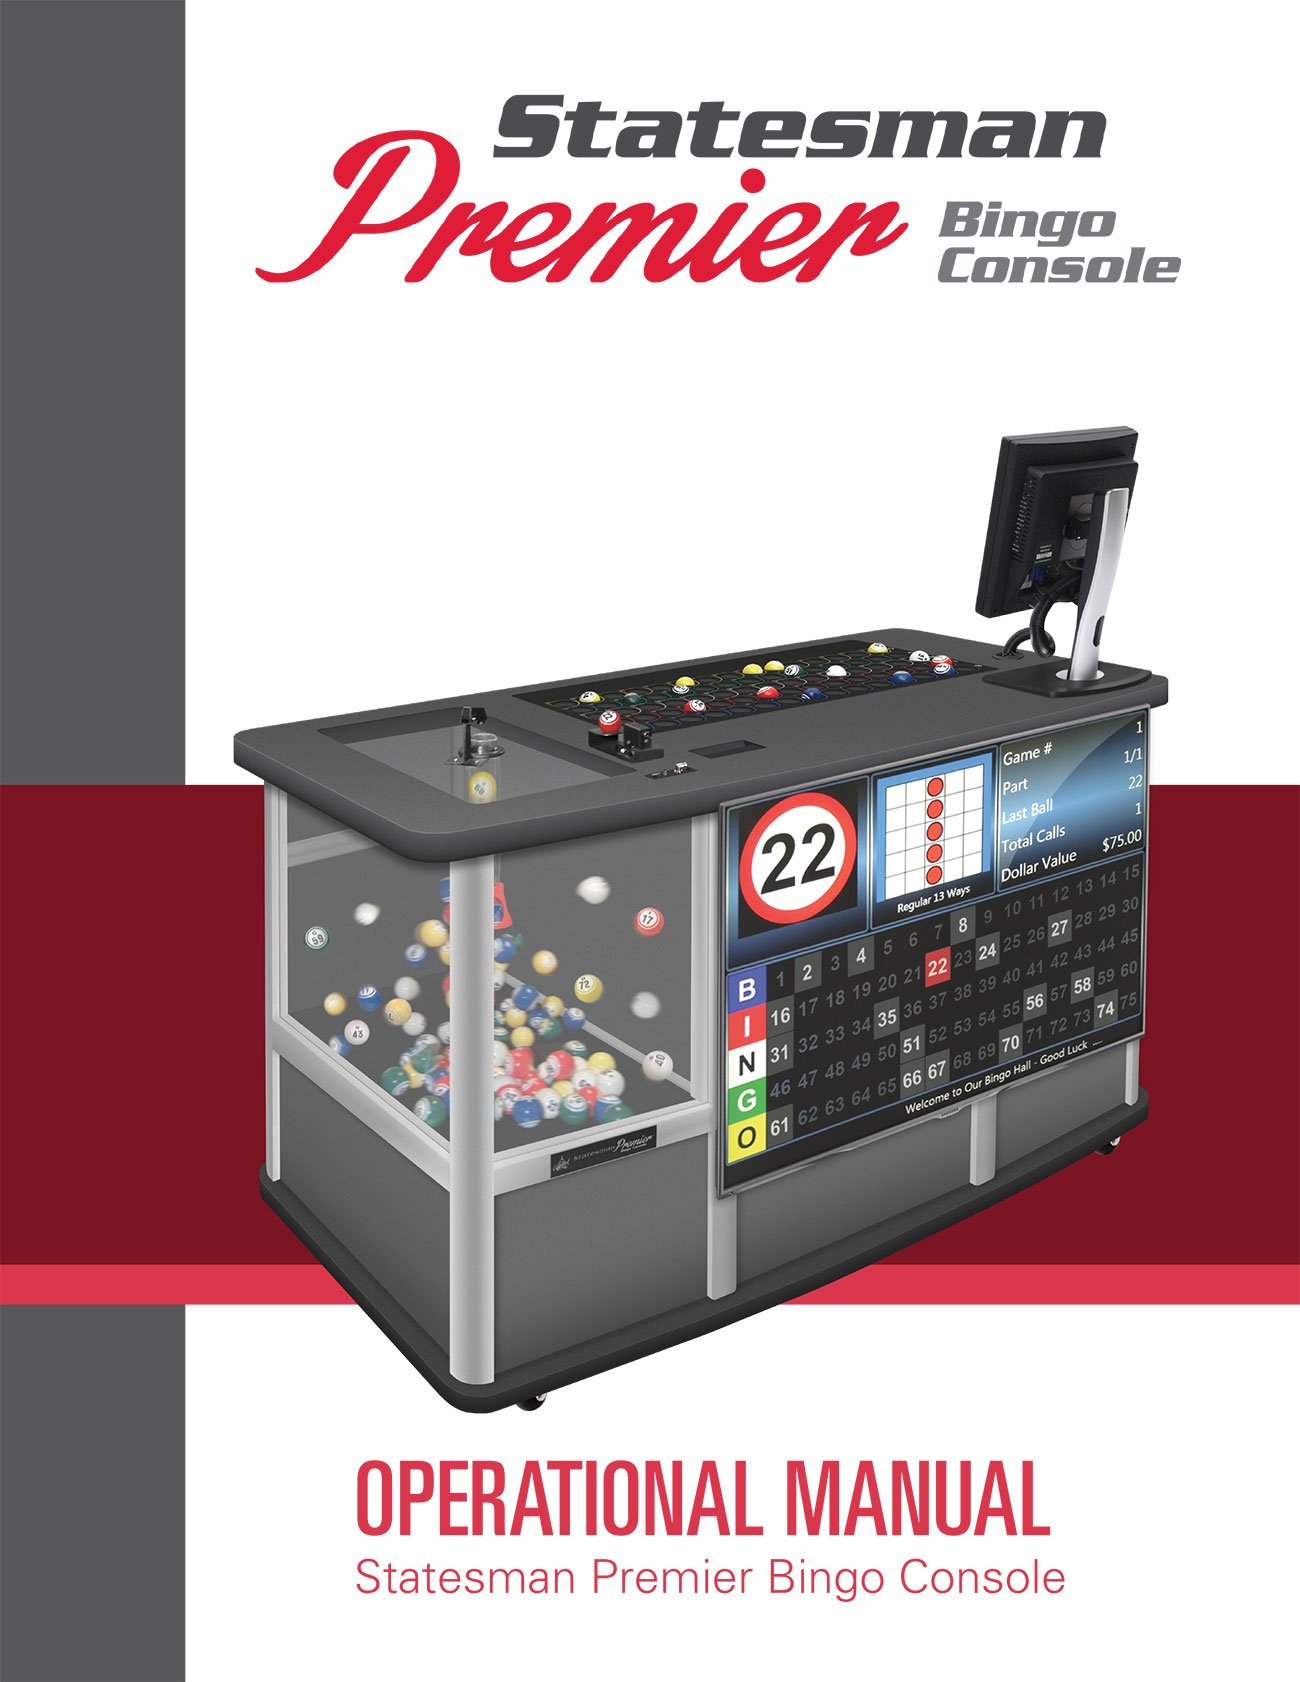 Statesman Premier Manual Equipment Manuals